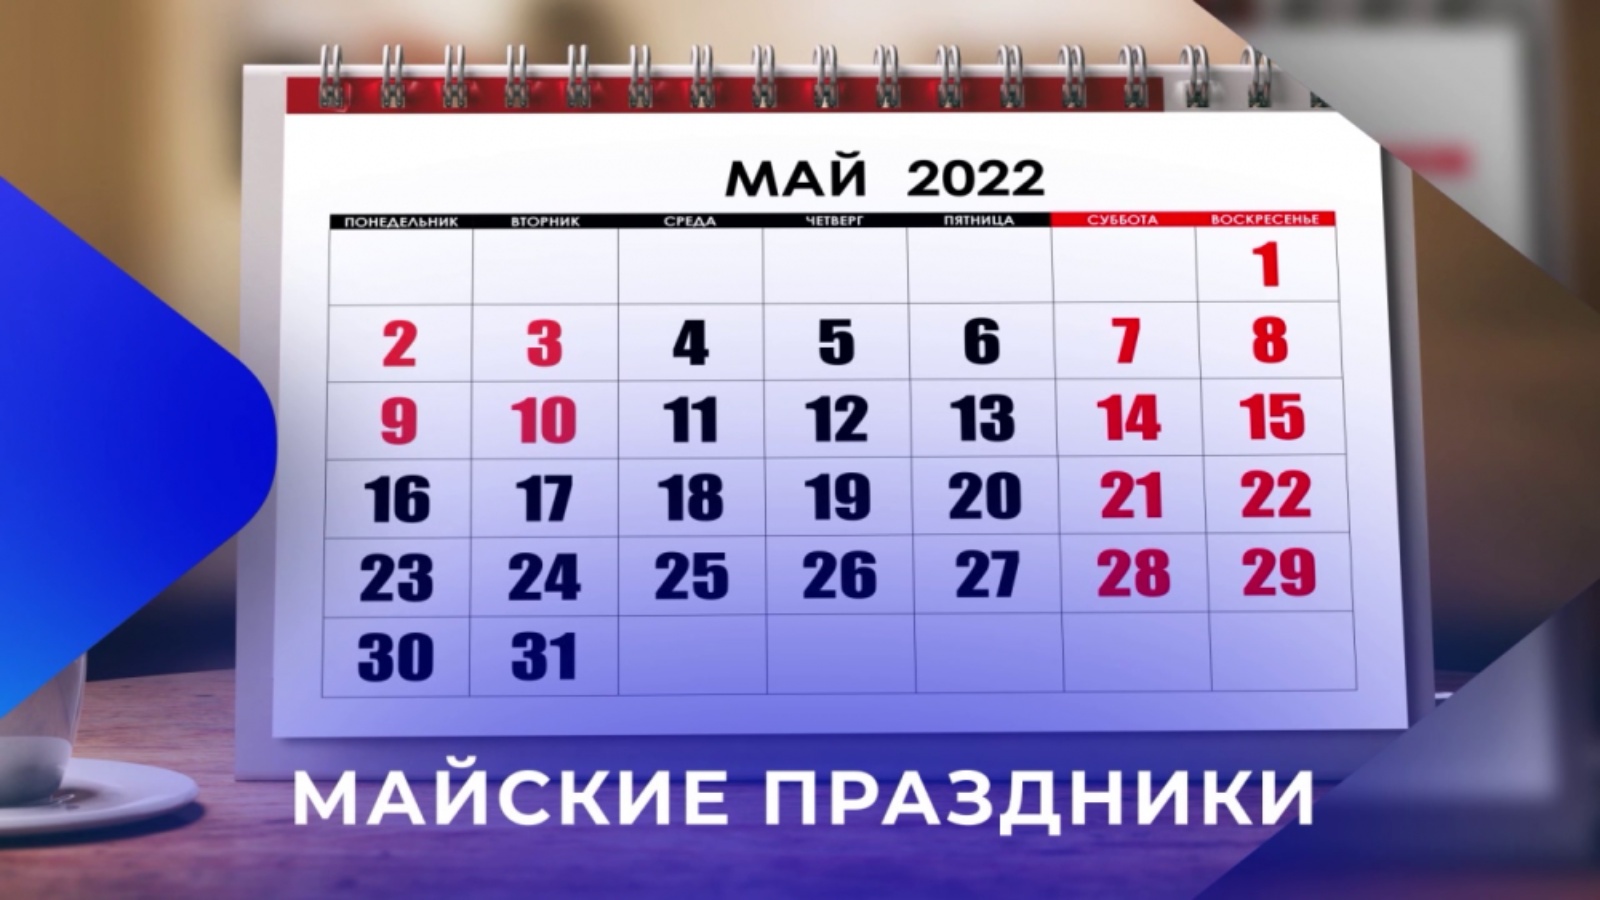 2 3 мая праздники. Праздники в мае. Рабочий график на майские праздники. Календарь майских праздников 2022. Выходные в мае 2022.